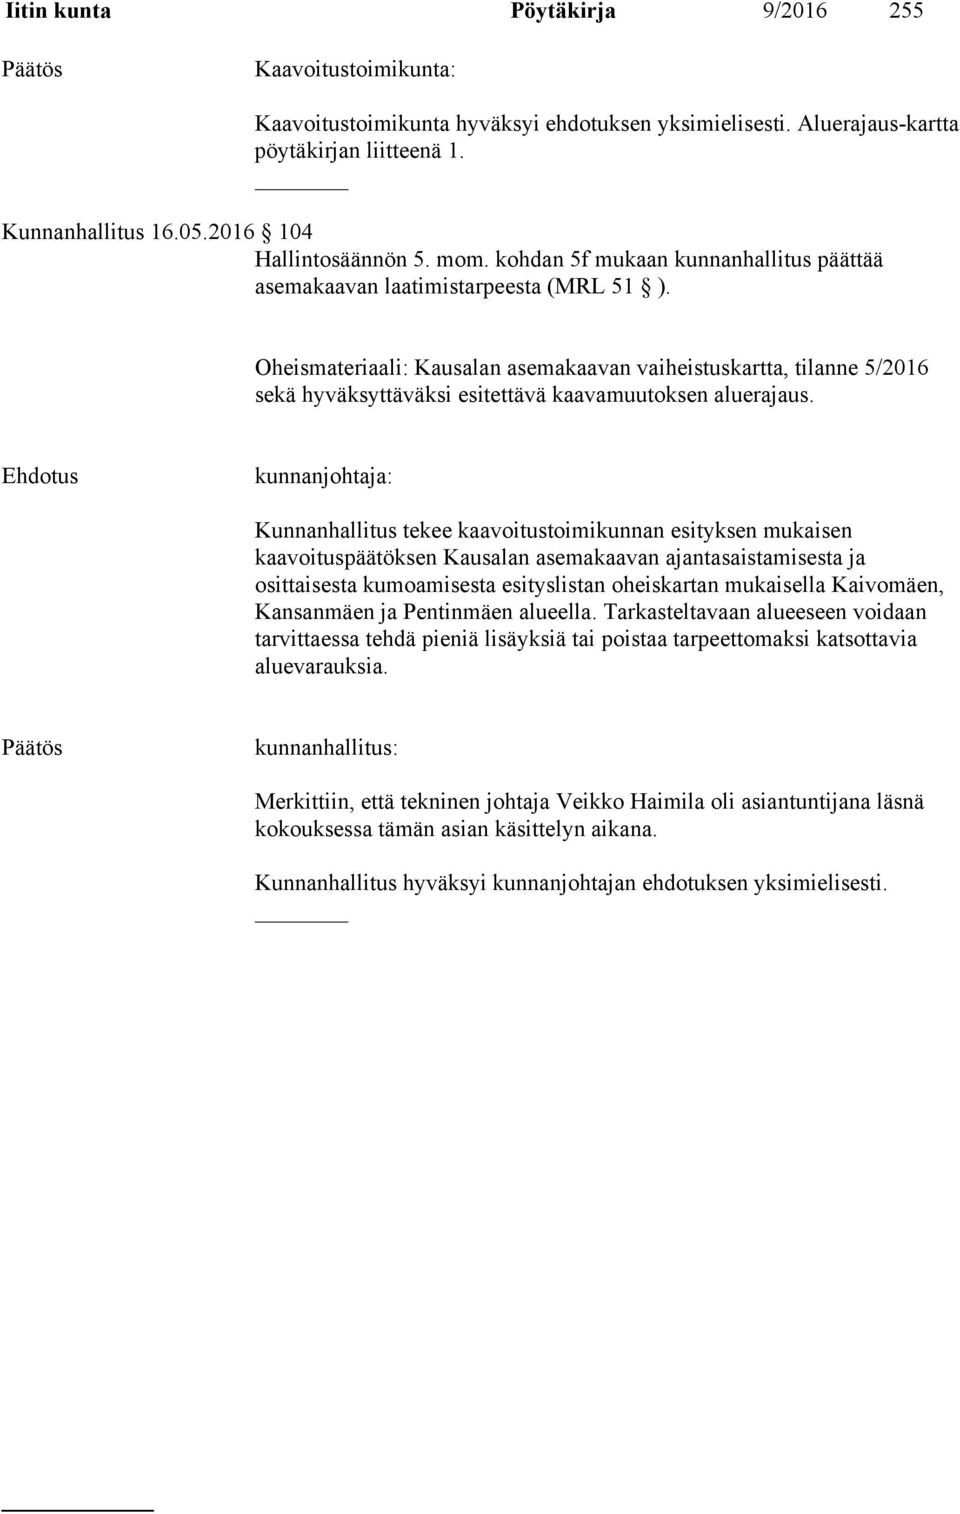 Oheismateriaali: Kausalan asemakaavan vaiheistuskartta, tilanne 5/2016 sekä hyväksyttäväksi esitettävä kaavamuutoksen aluerajaus.